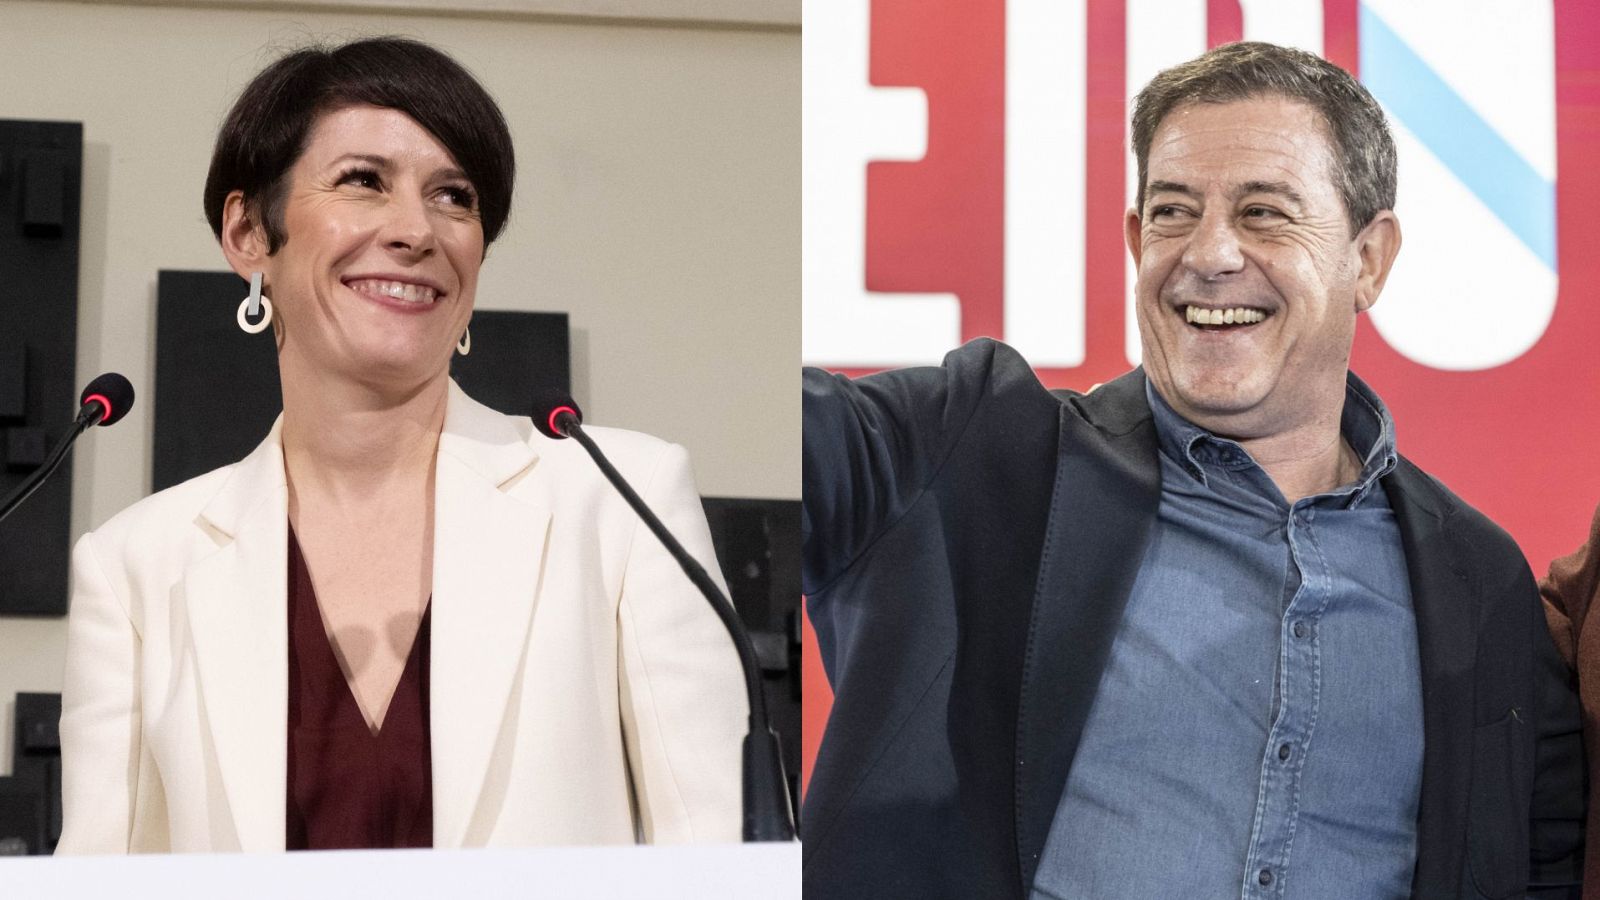 Los candidatos Ana Pontón (BNG) y José Ramón Gómez Besteiro (PSdeG) participarán en el debate en RTVE este miércoles